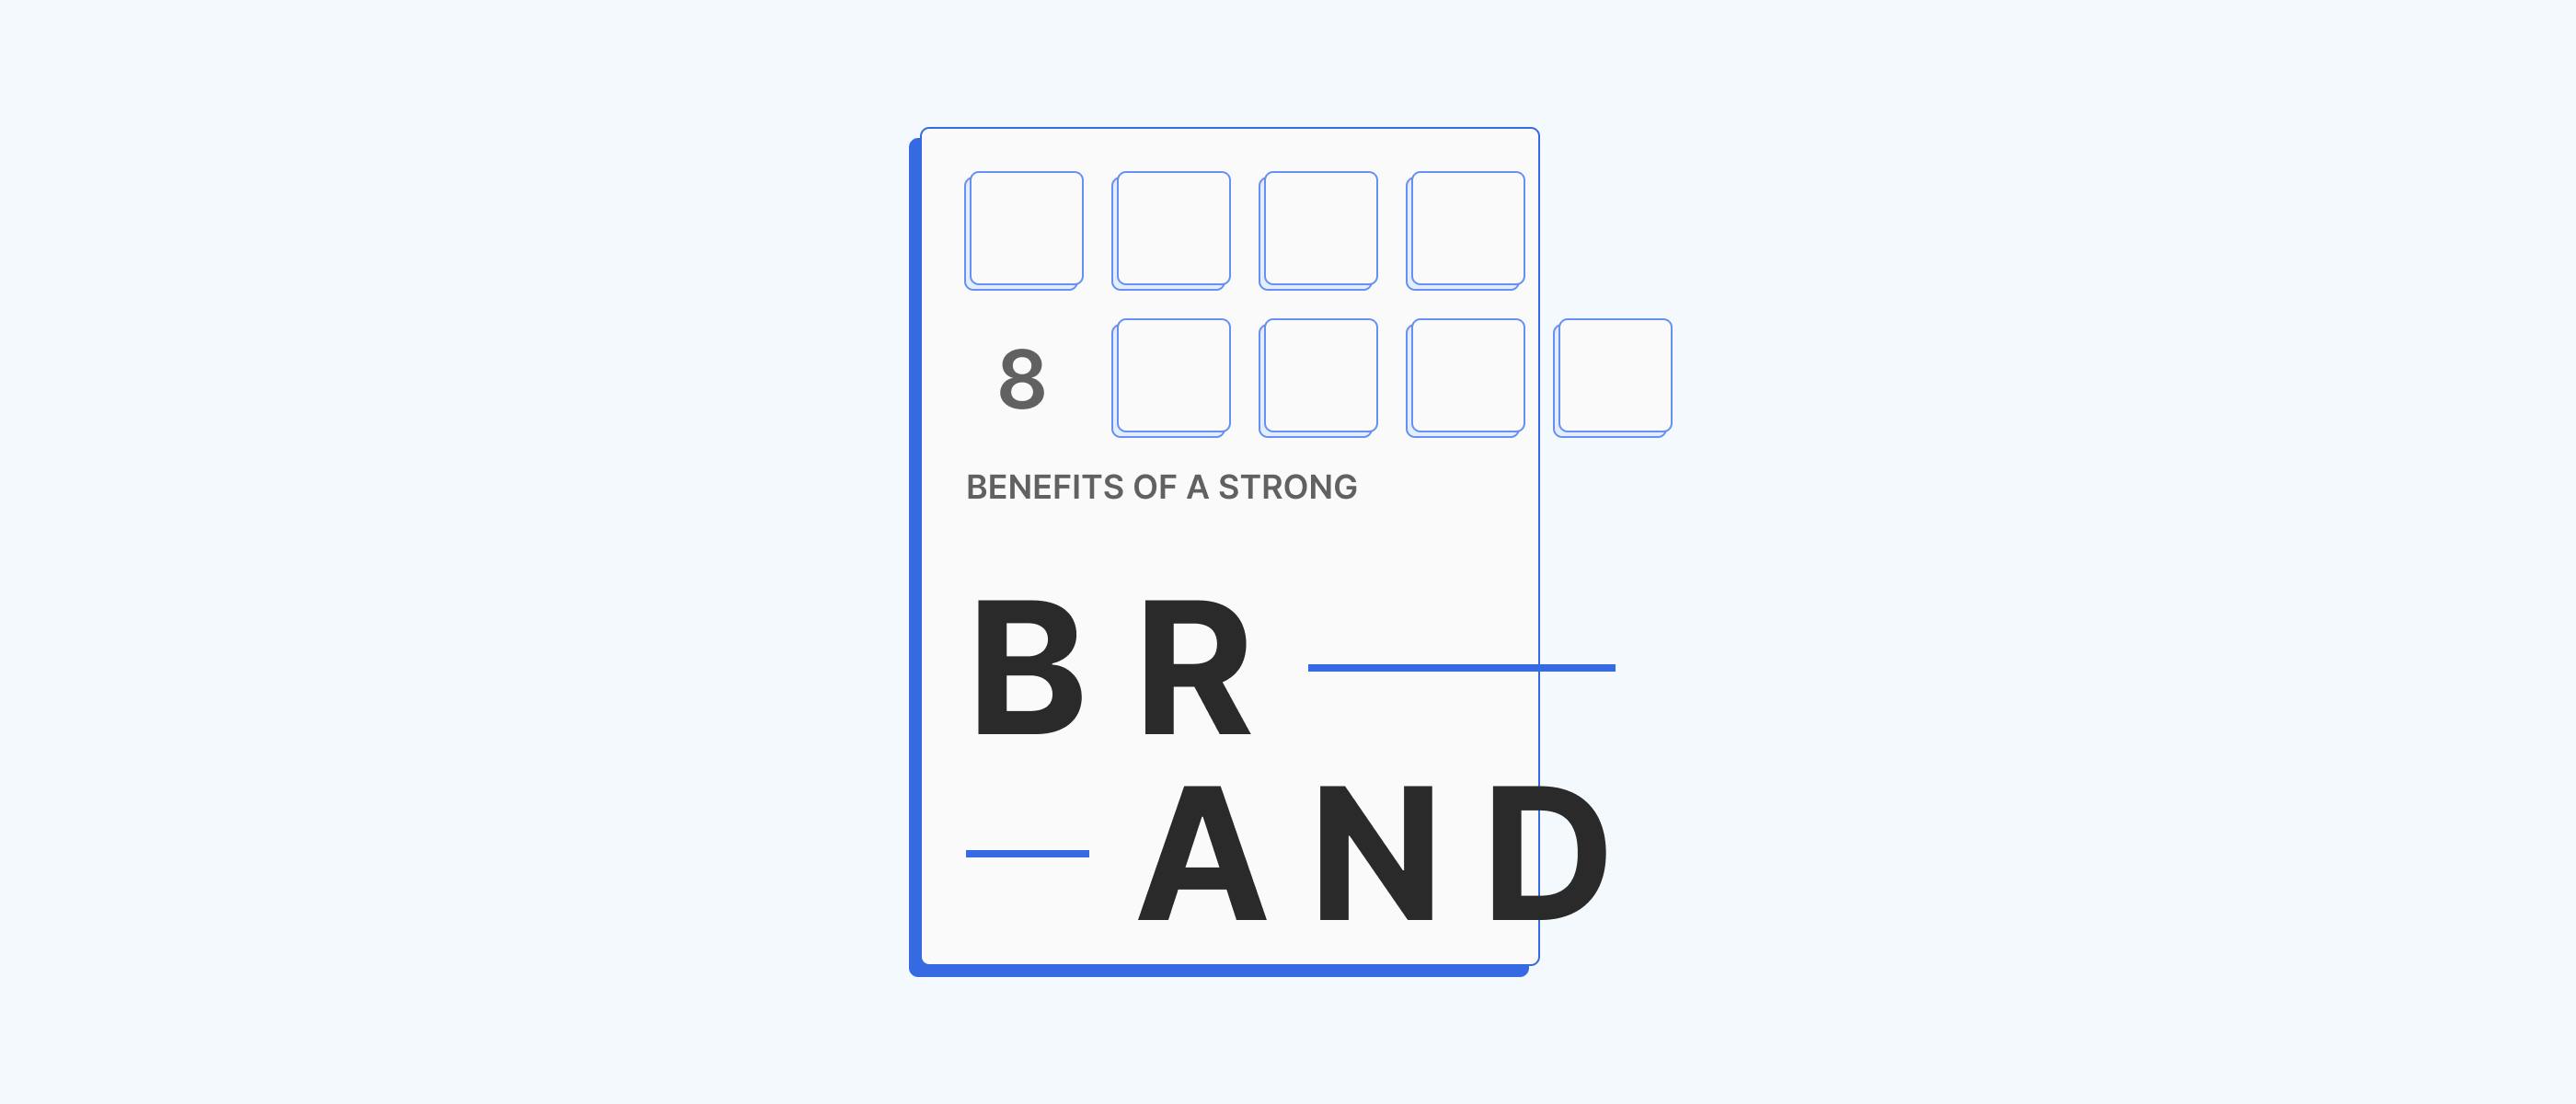 The Benefit of Branding